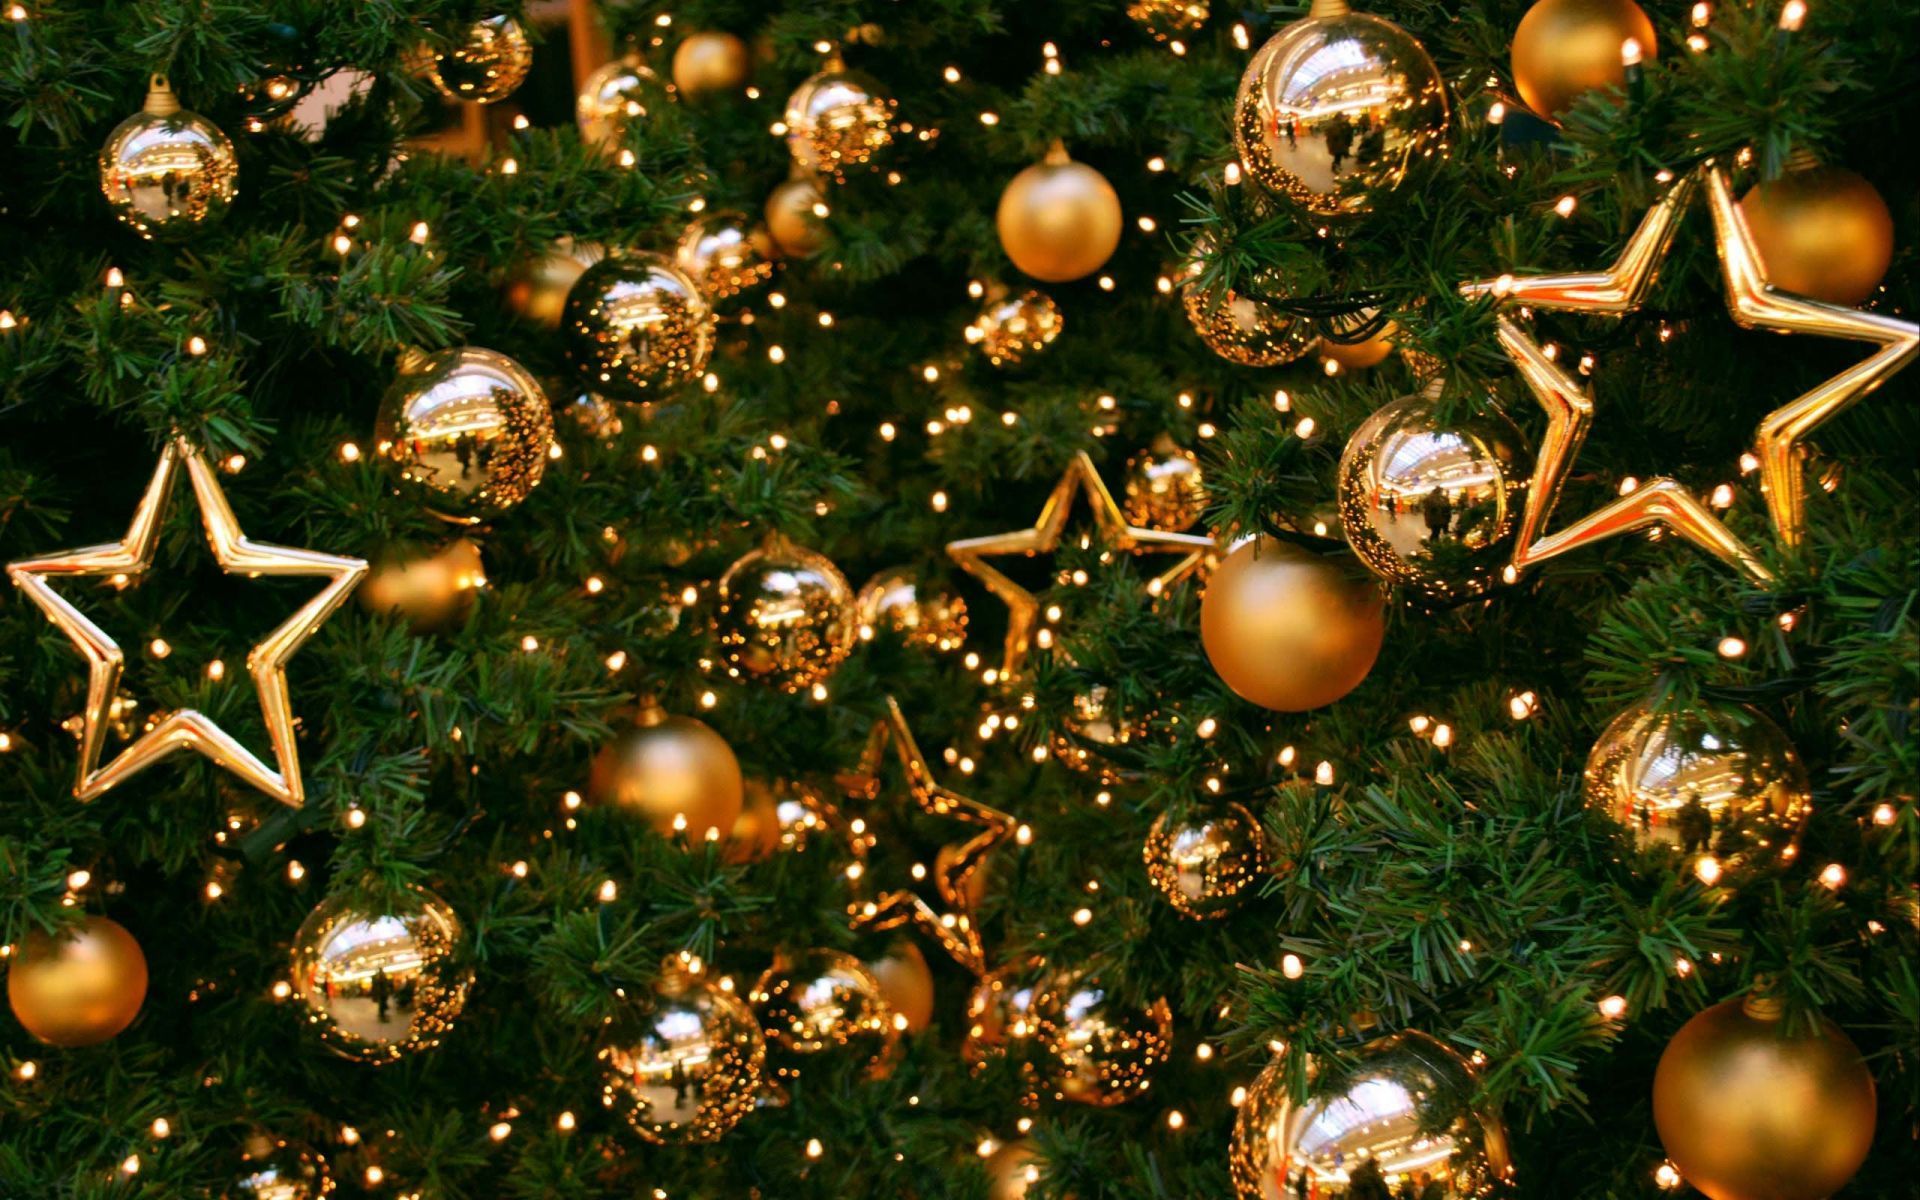 Golden Christmas Balls On Christmas Tree. HD Christmas Wallpaper for Mobile and Desktop